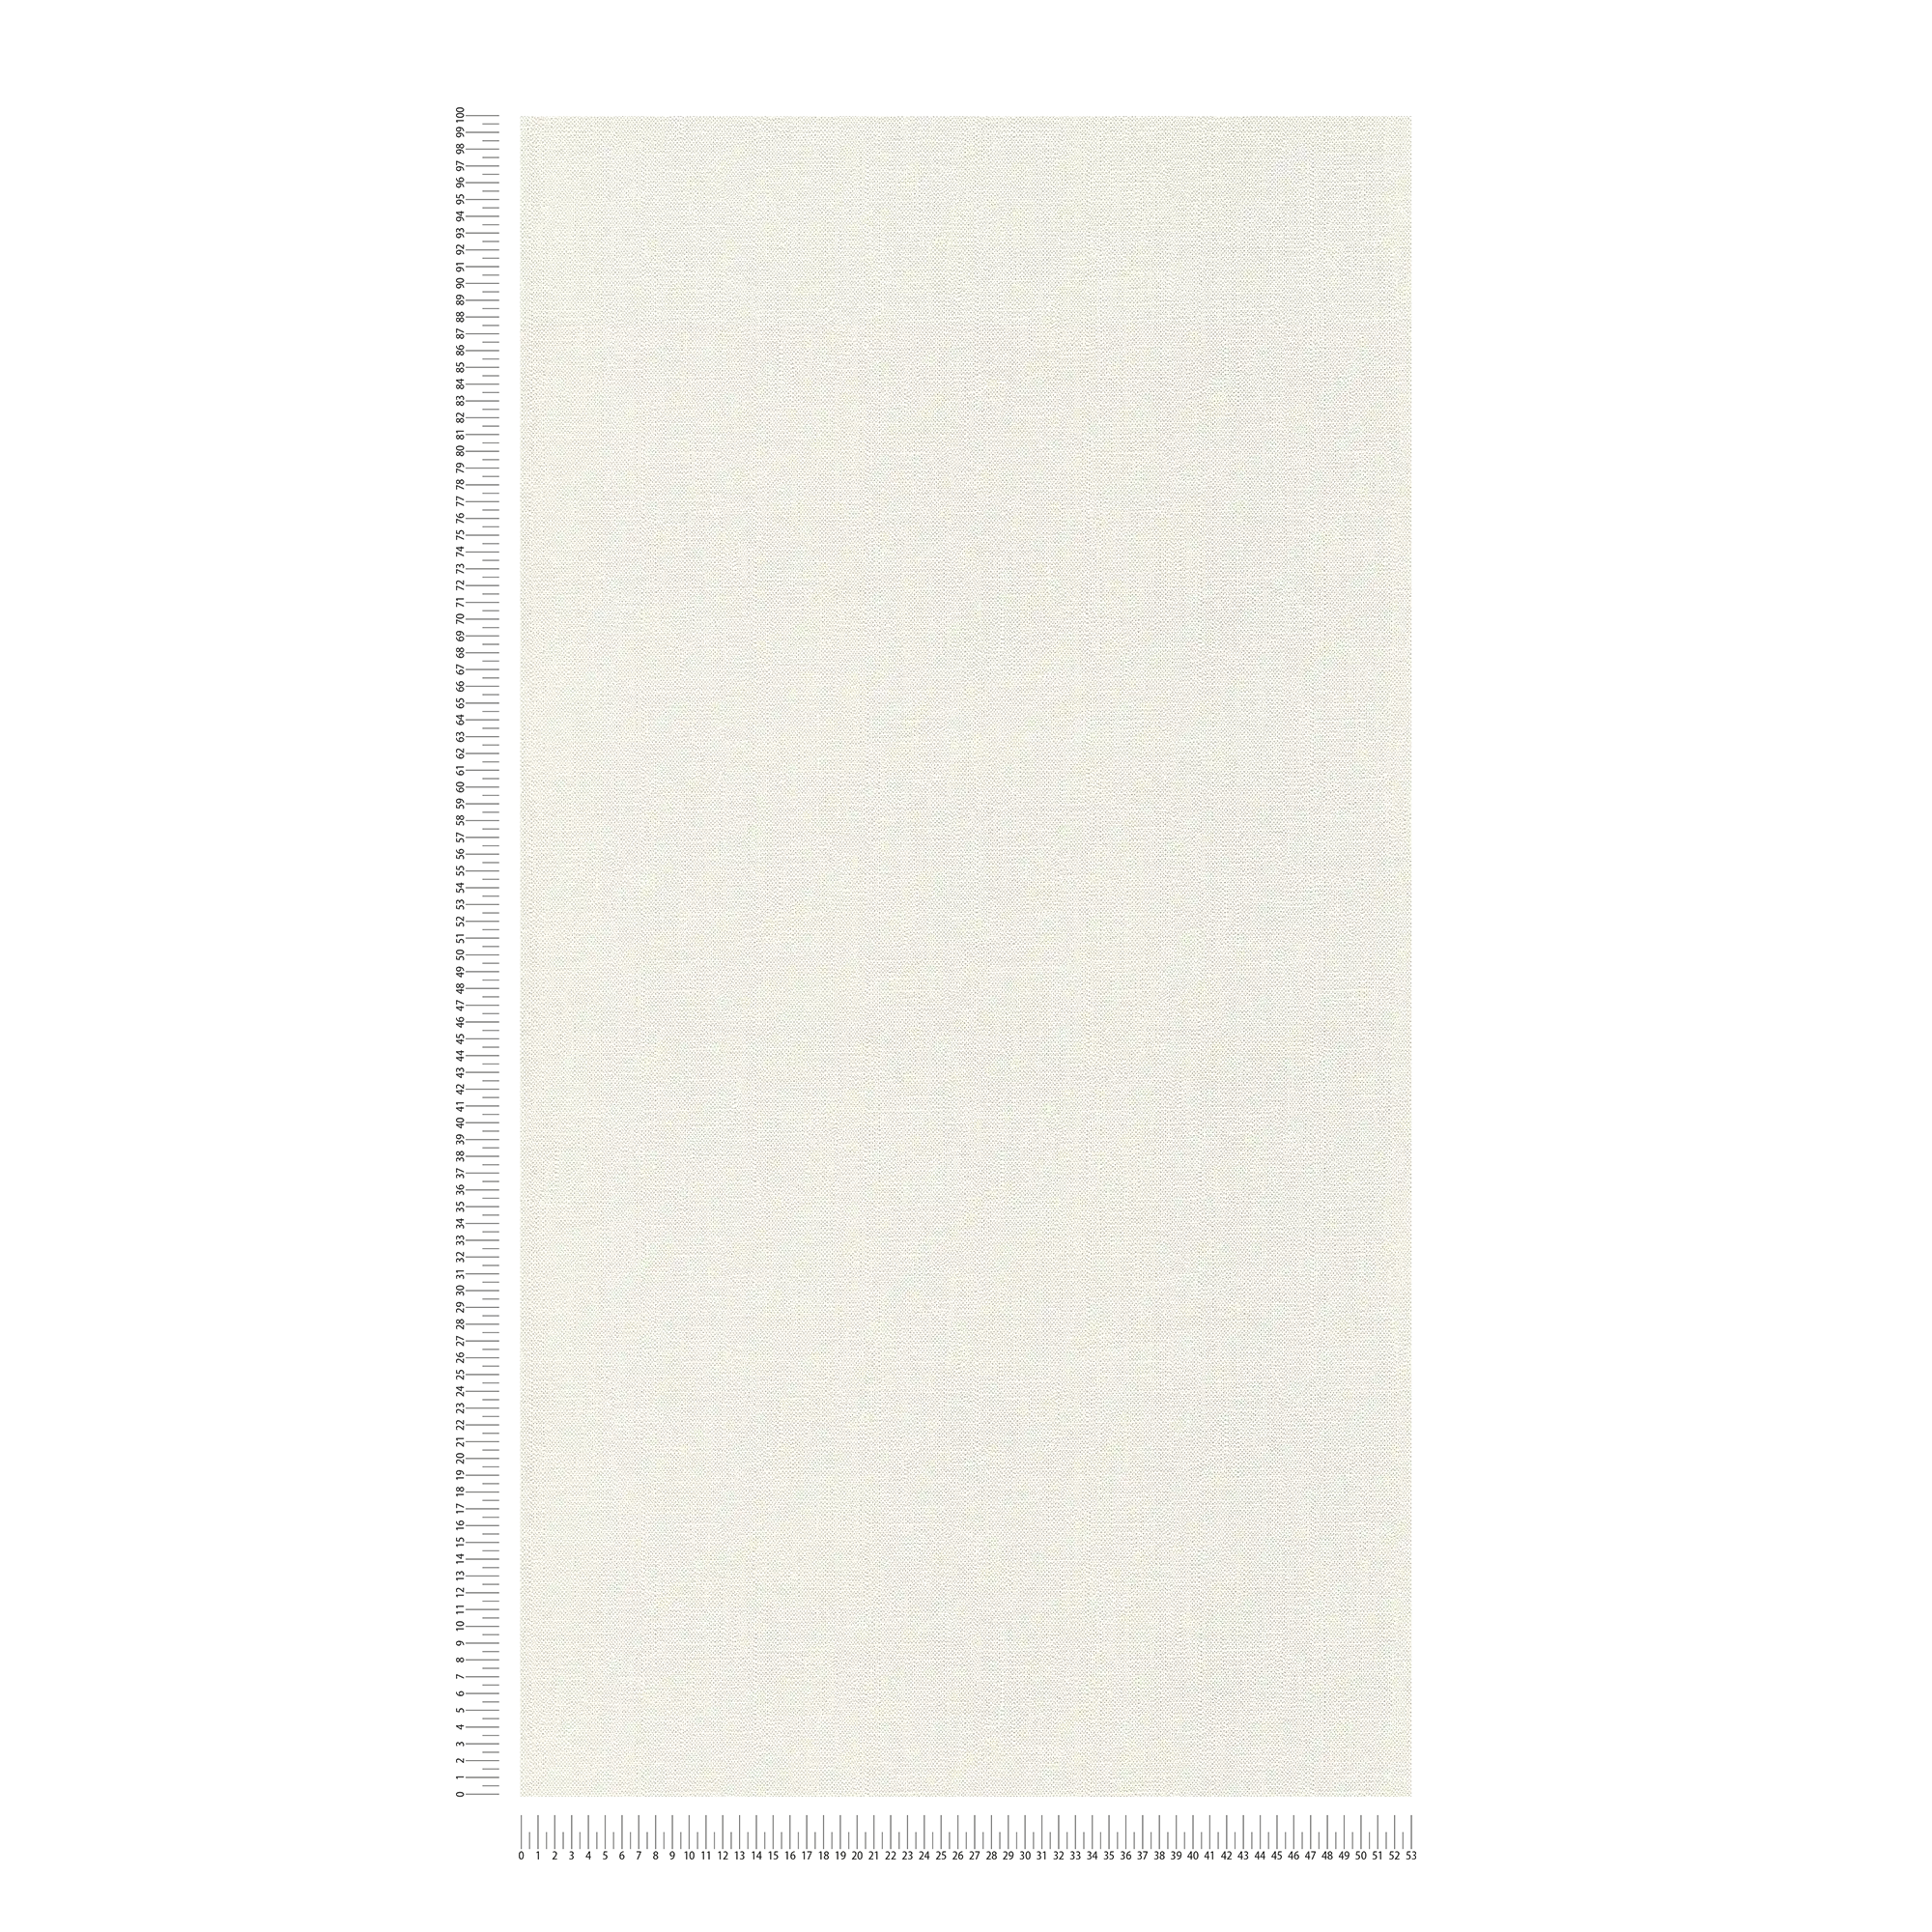             Papier peint intissé blanc uni mat avec structure mousse
        